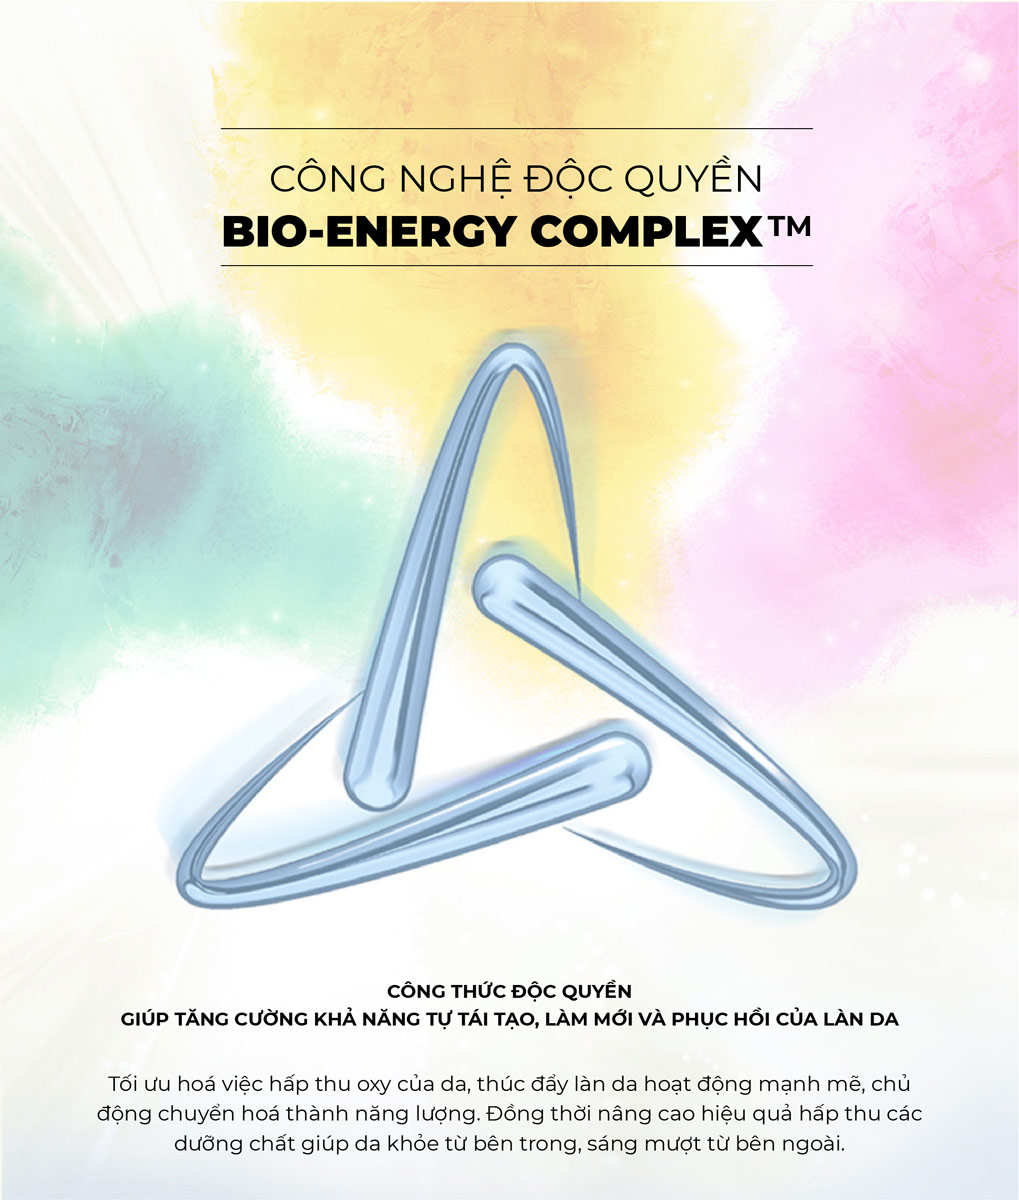 Mặt Nạ Bio-Essence Bio-Treasure Intensive Repair Ampoule Mask ứng dụng công nghệ độc quyền Bio-Energy Complex giúp tăng cường khả năng tự tái tạo, phục hồi và làm mới của làn da.